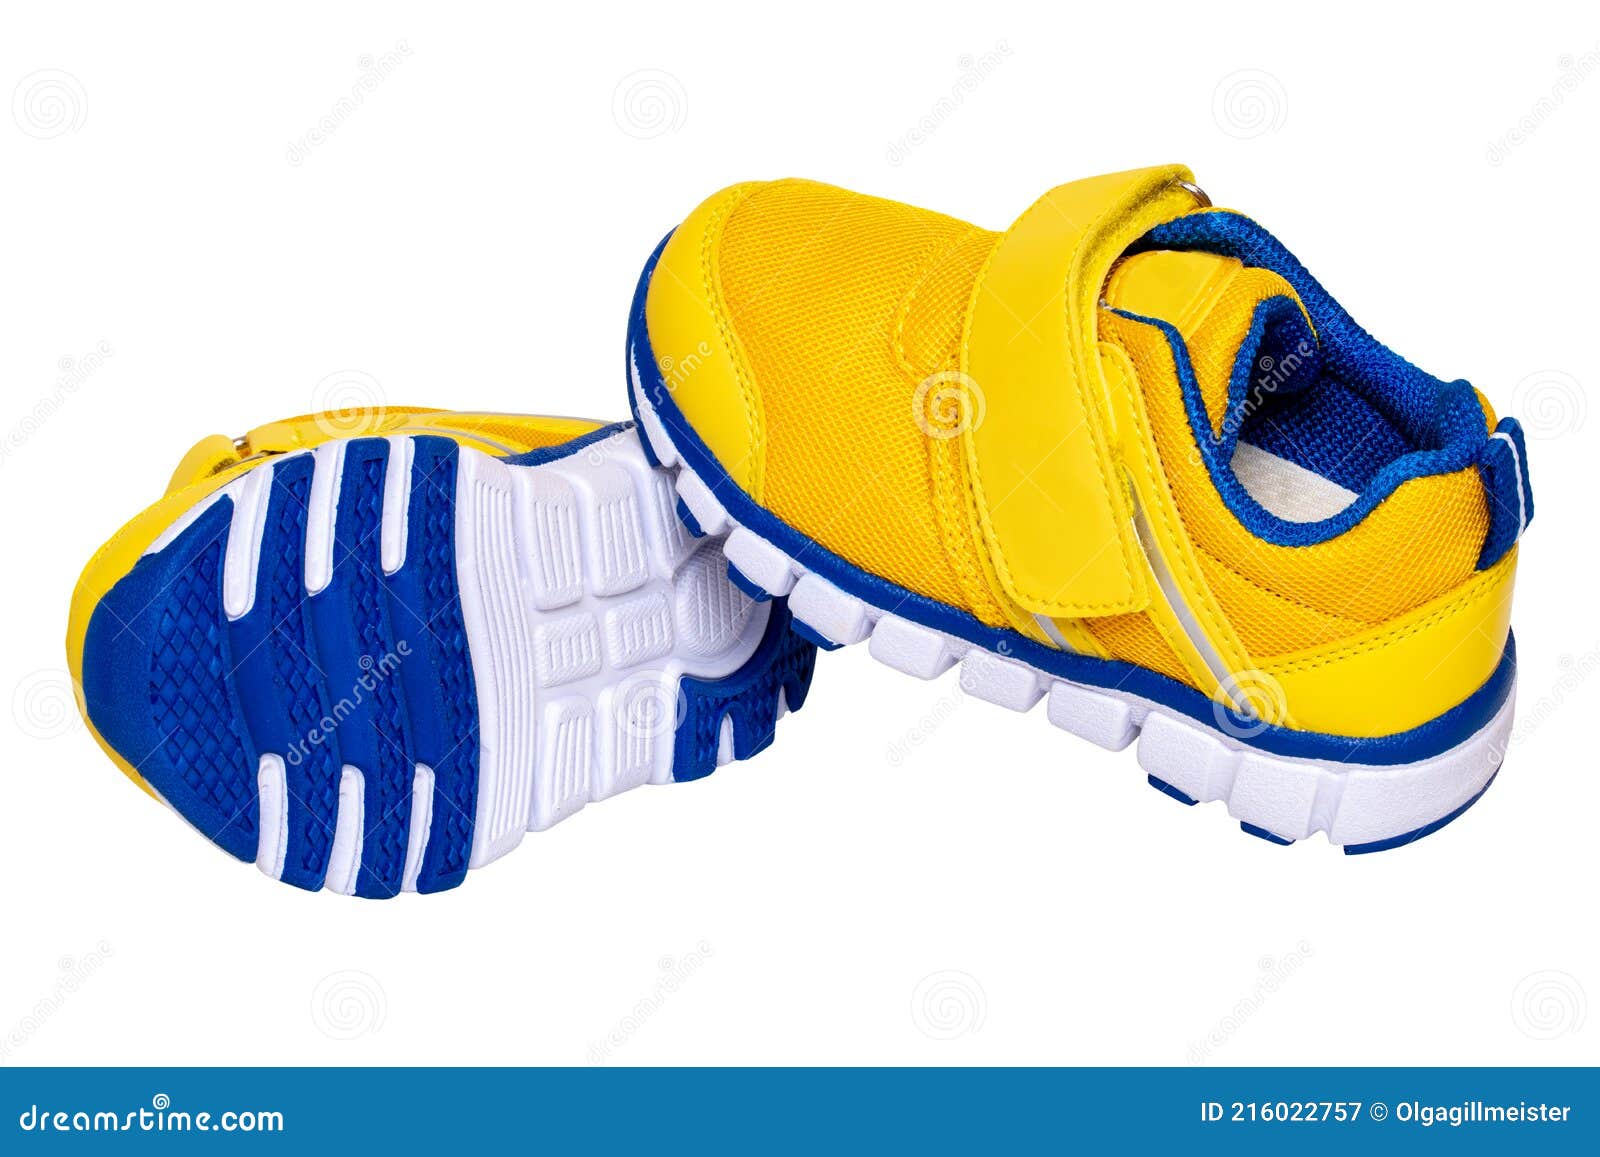 Moda De Zapatos Para Niños. Primer Plano De Un Par De Zapatillas De Deporte  De Niño Azul Amarillo O Zapatos Deportivos Aislados so Imagen de archivo -  Imagen de rojo, objeto: 216022757